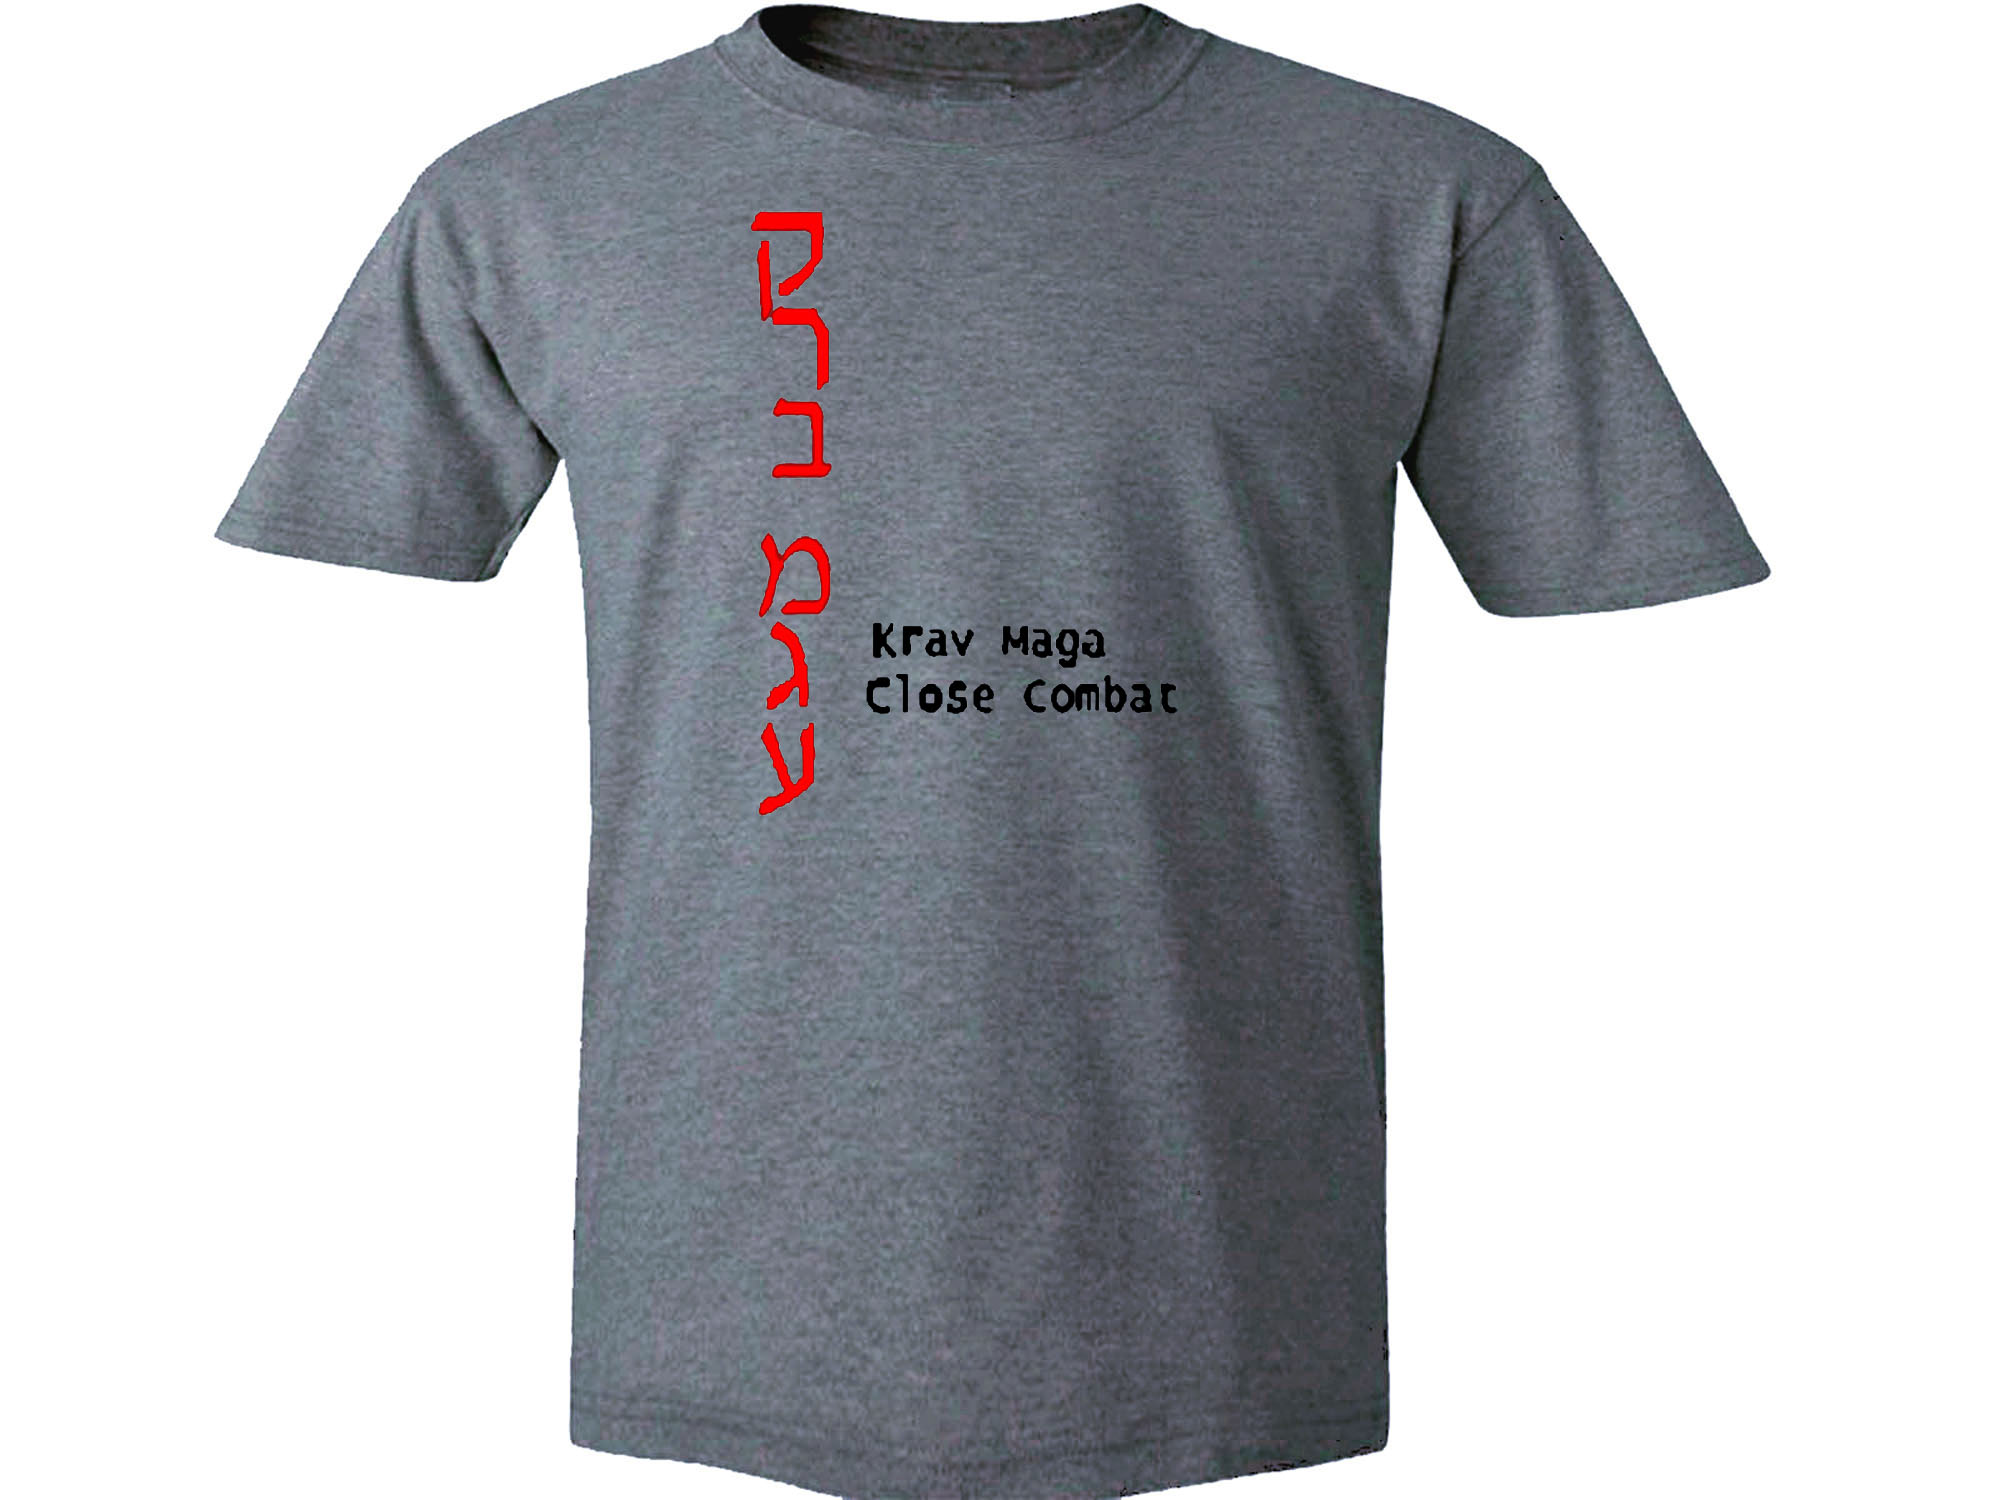 Krav Maga (Close Combat, Martial Arts) Israel Army T-Shirt gray t-shirt